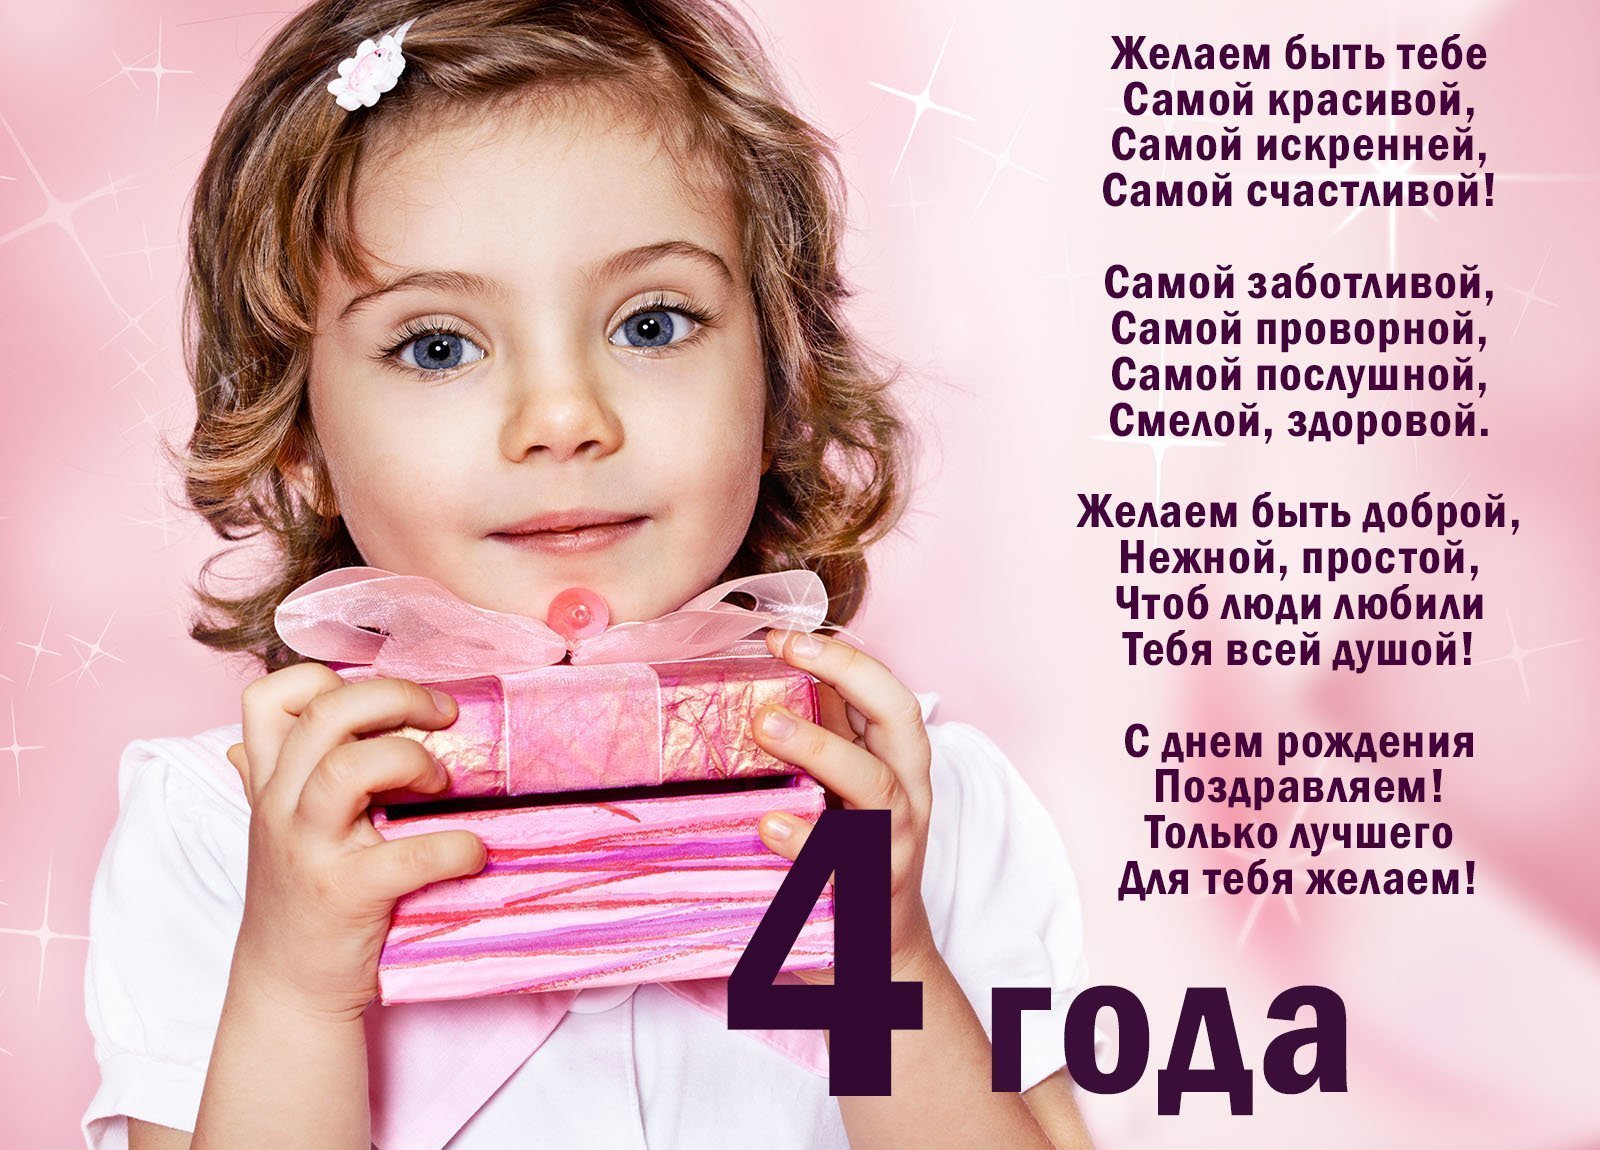 Стих на день рождения 5 лет девочке: Красивые стихи с днем рождения ребенку девочке на 3-4, 5-6, 7-8, 9-10 лет